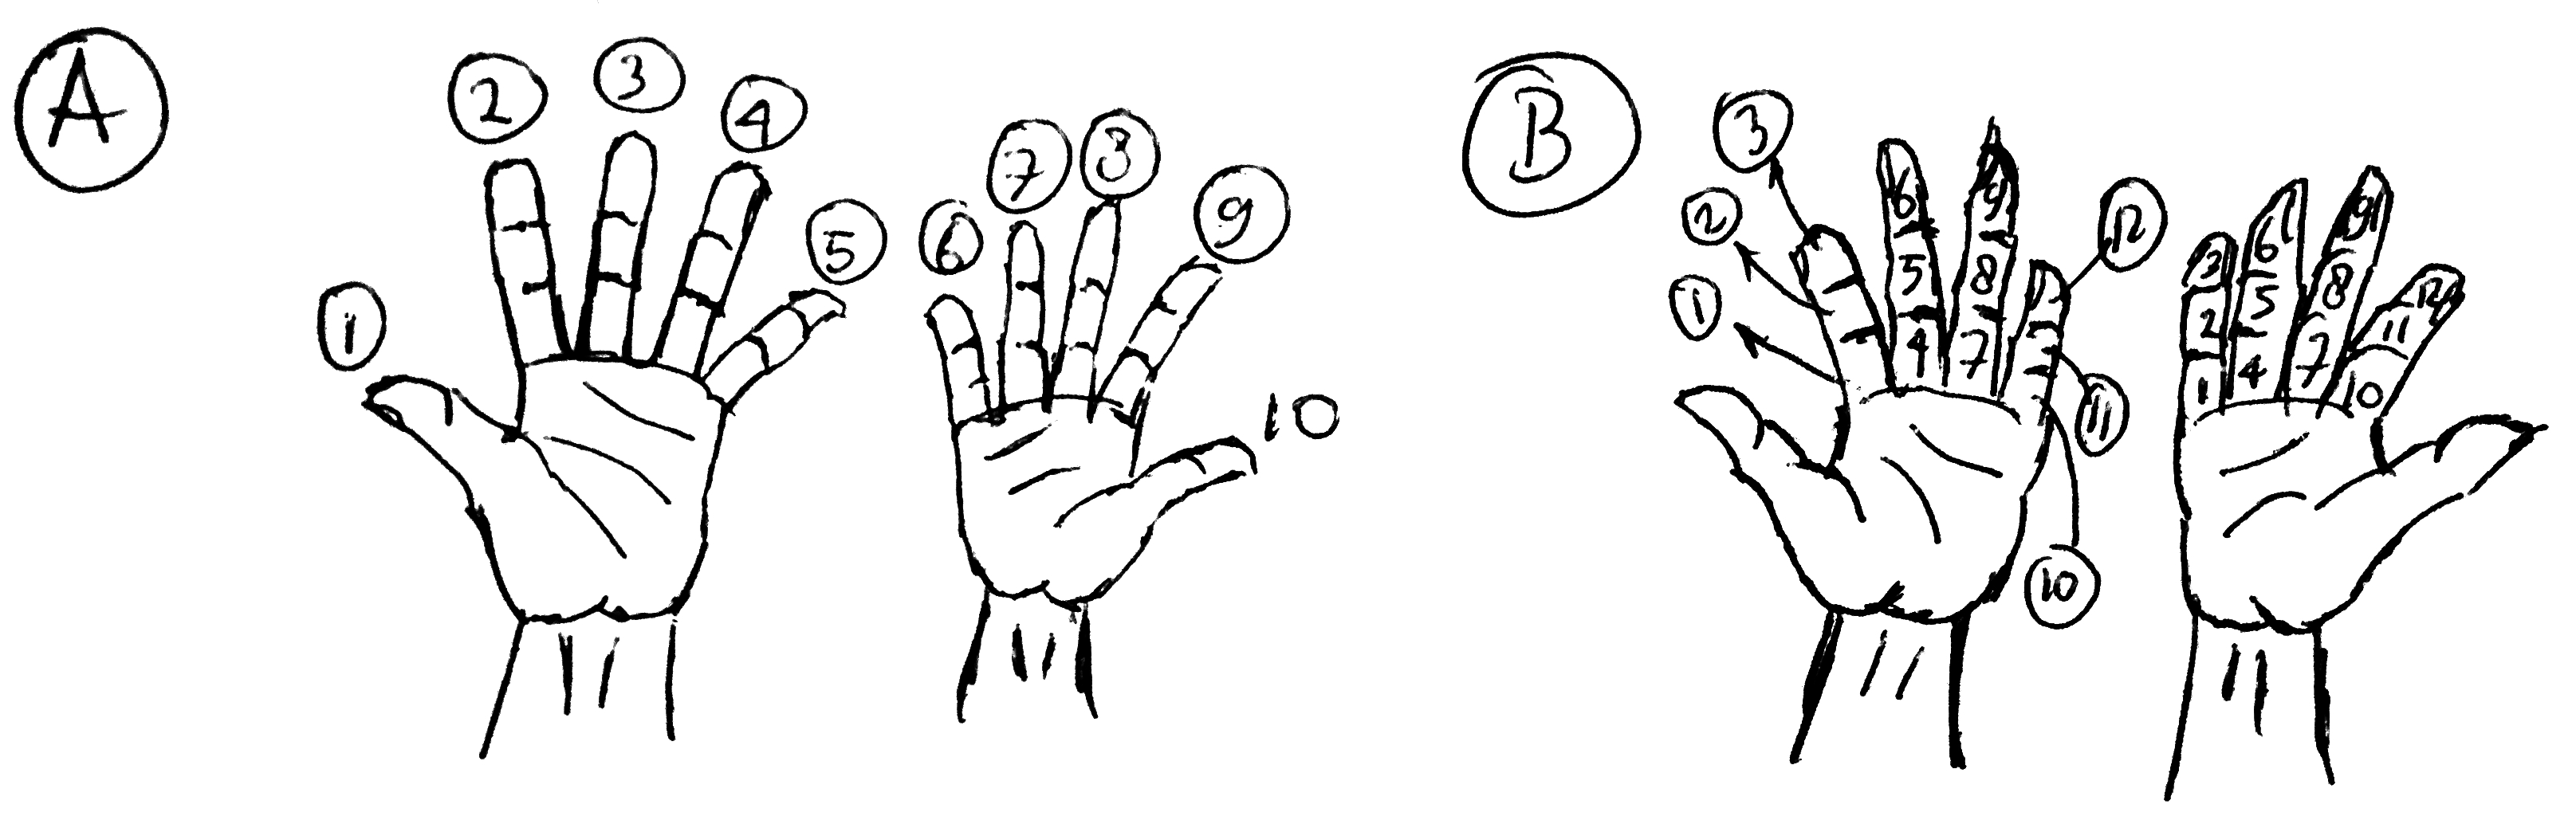 Ada tiga buku pada satu jari jadi menggunakan empat jari selain jempol pada sebelah tangan kita bisa berhitung hingga 12 Dengan menggunakan kedua tangan